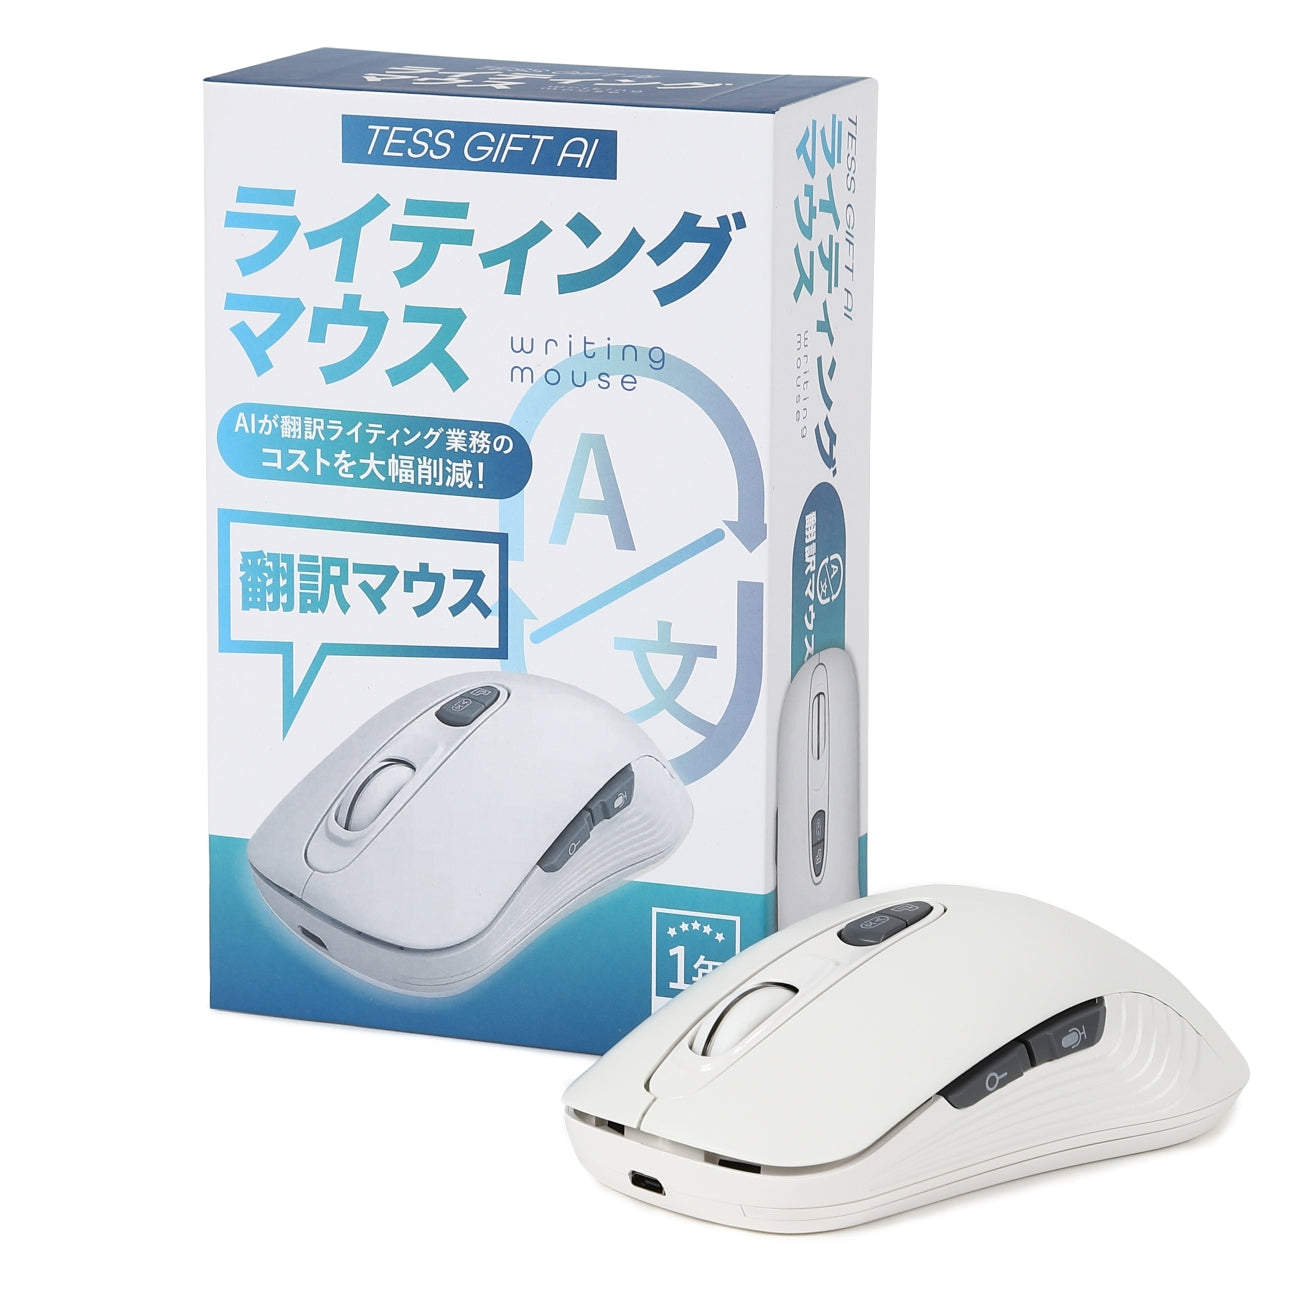 軽量 かんたんAI翻訳機 マウス mouse